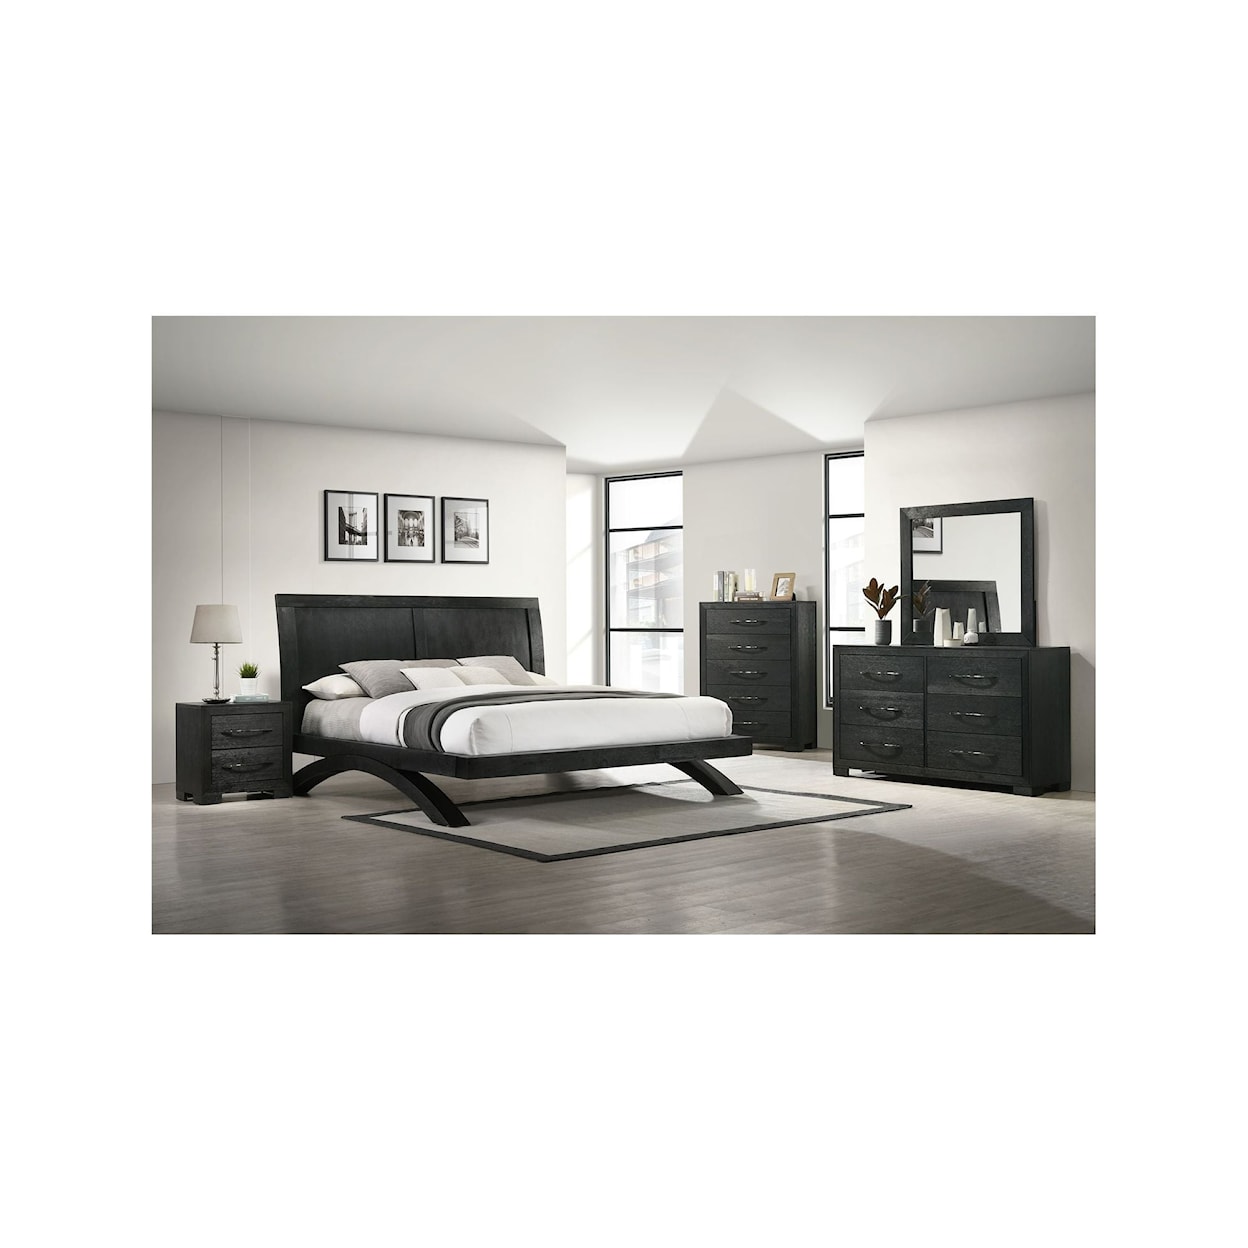 Elements International Allan Queen Panel 3Pc Bedroom Set In Black